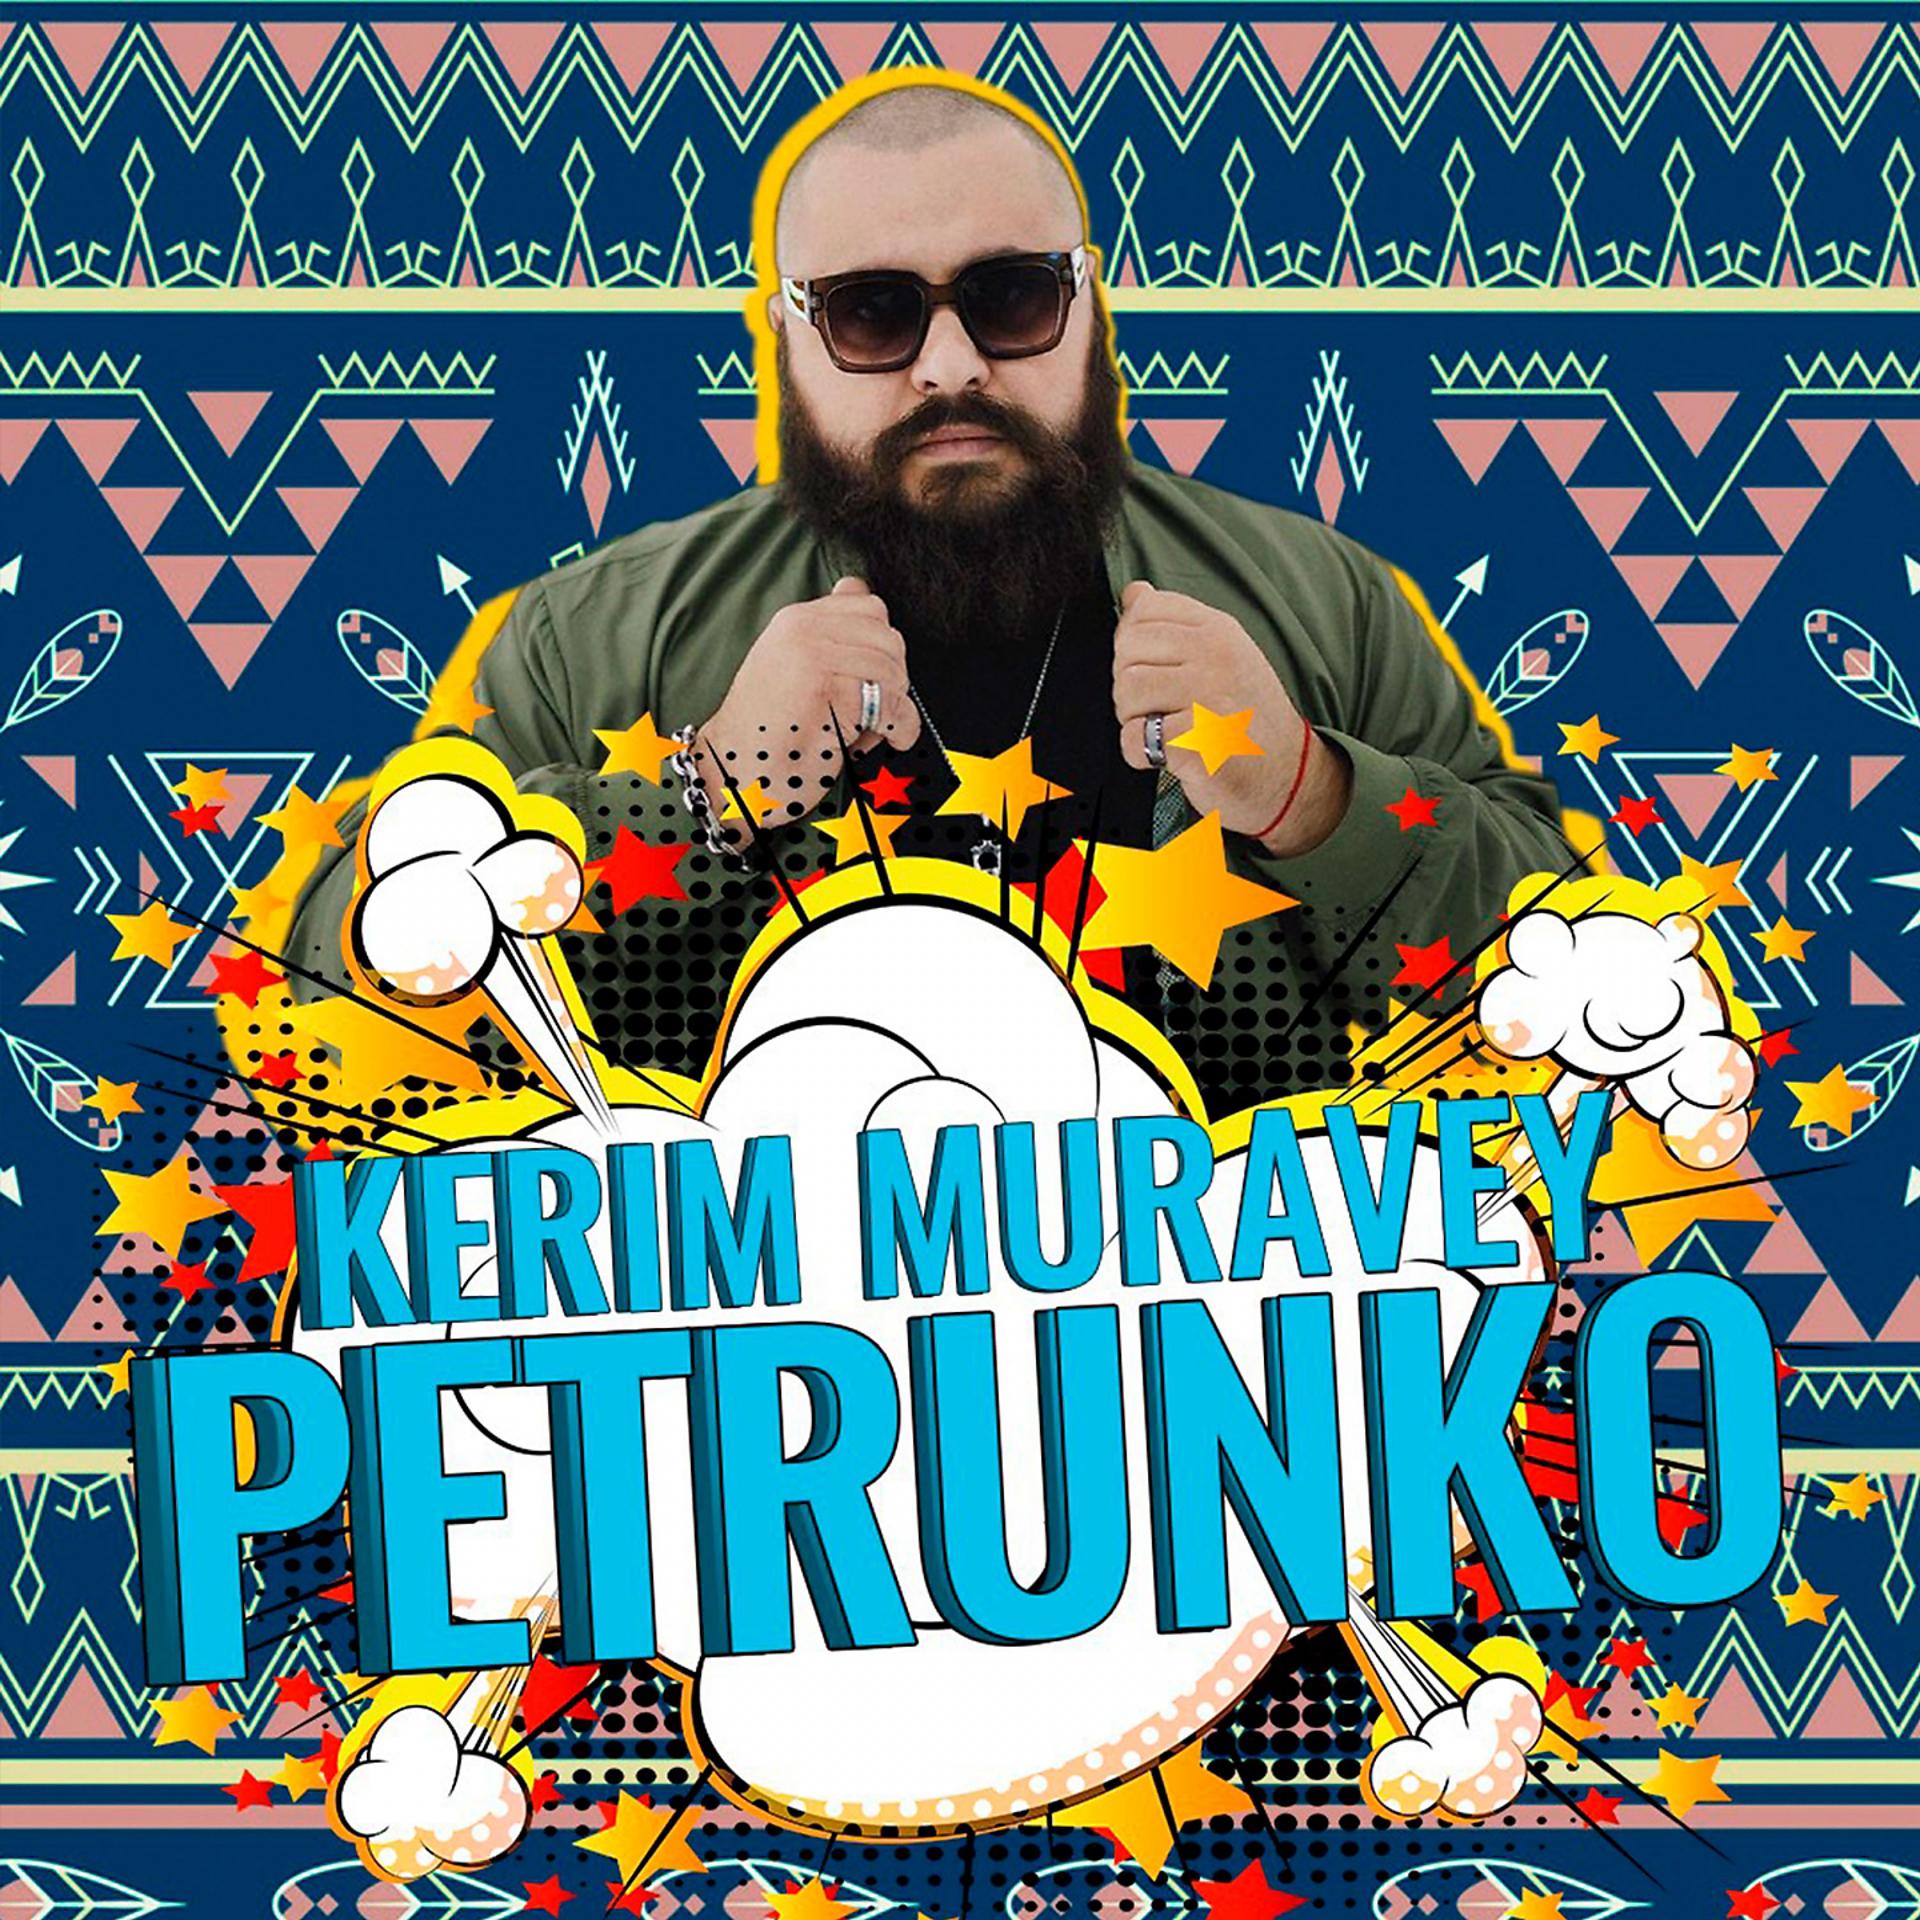 Постер альбома Petrunko